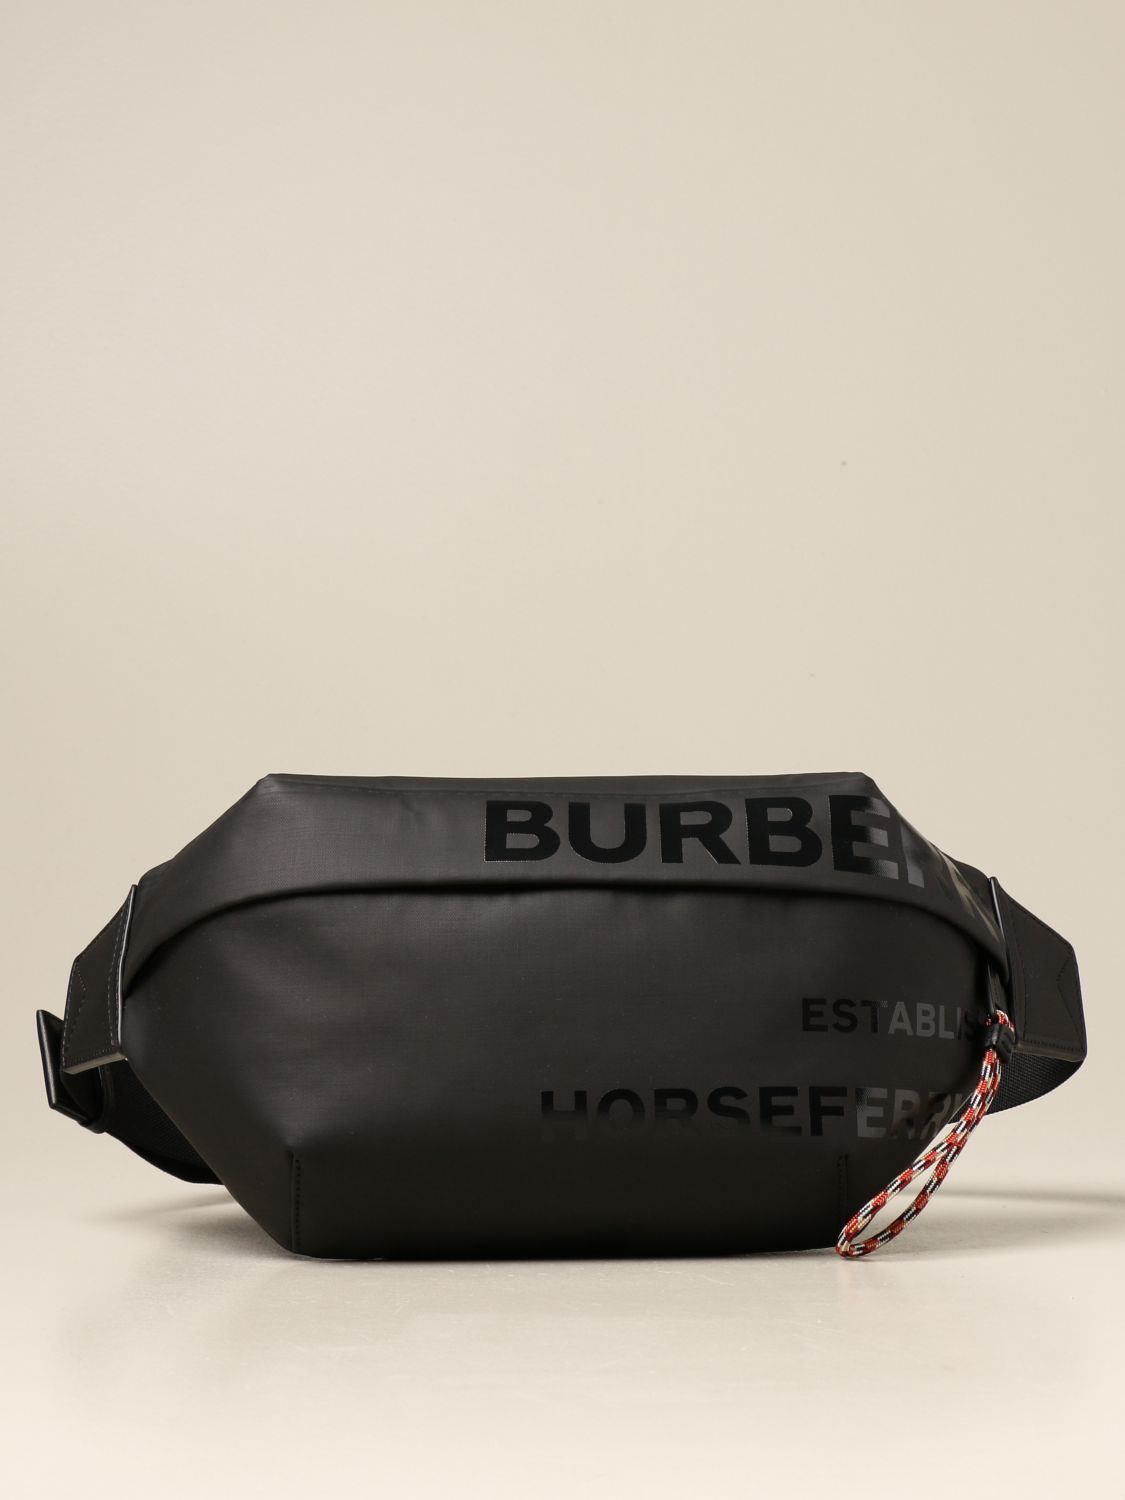 Burberry Horseferry Print Bum Bag - Farfetch